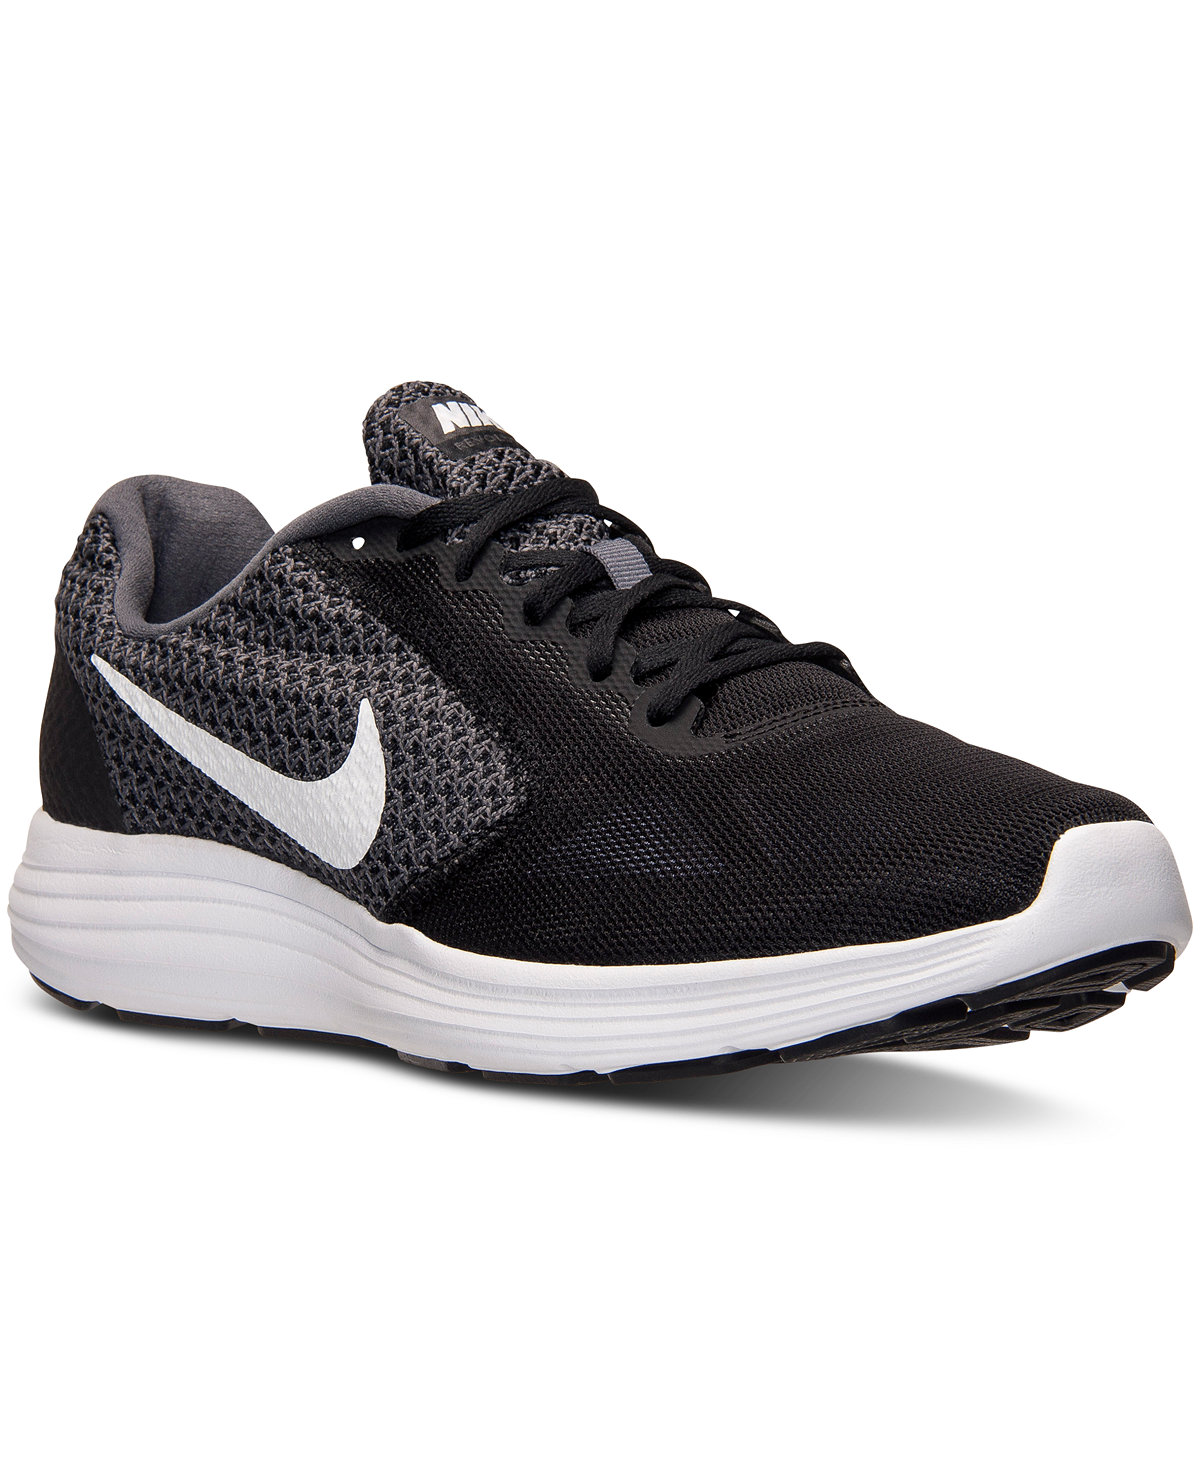 Nike men’s Revolution 3 running shoes for $35